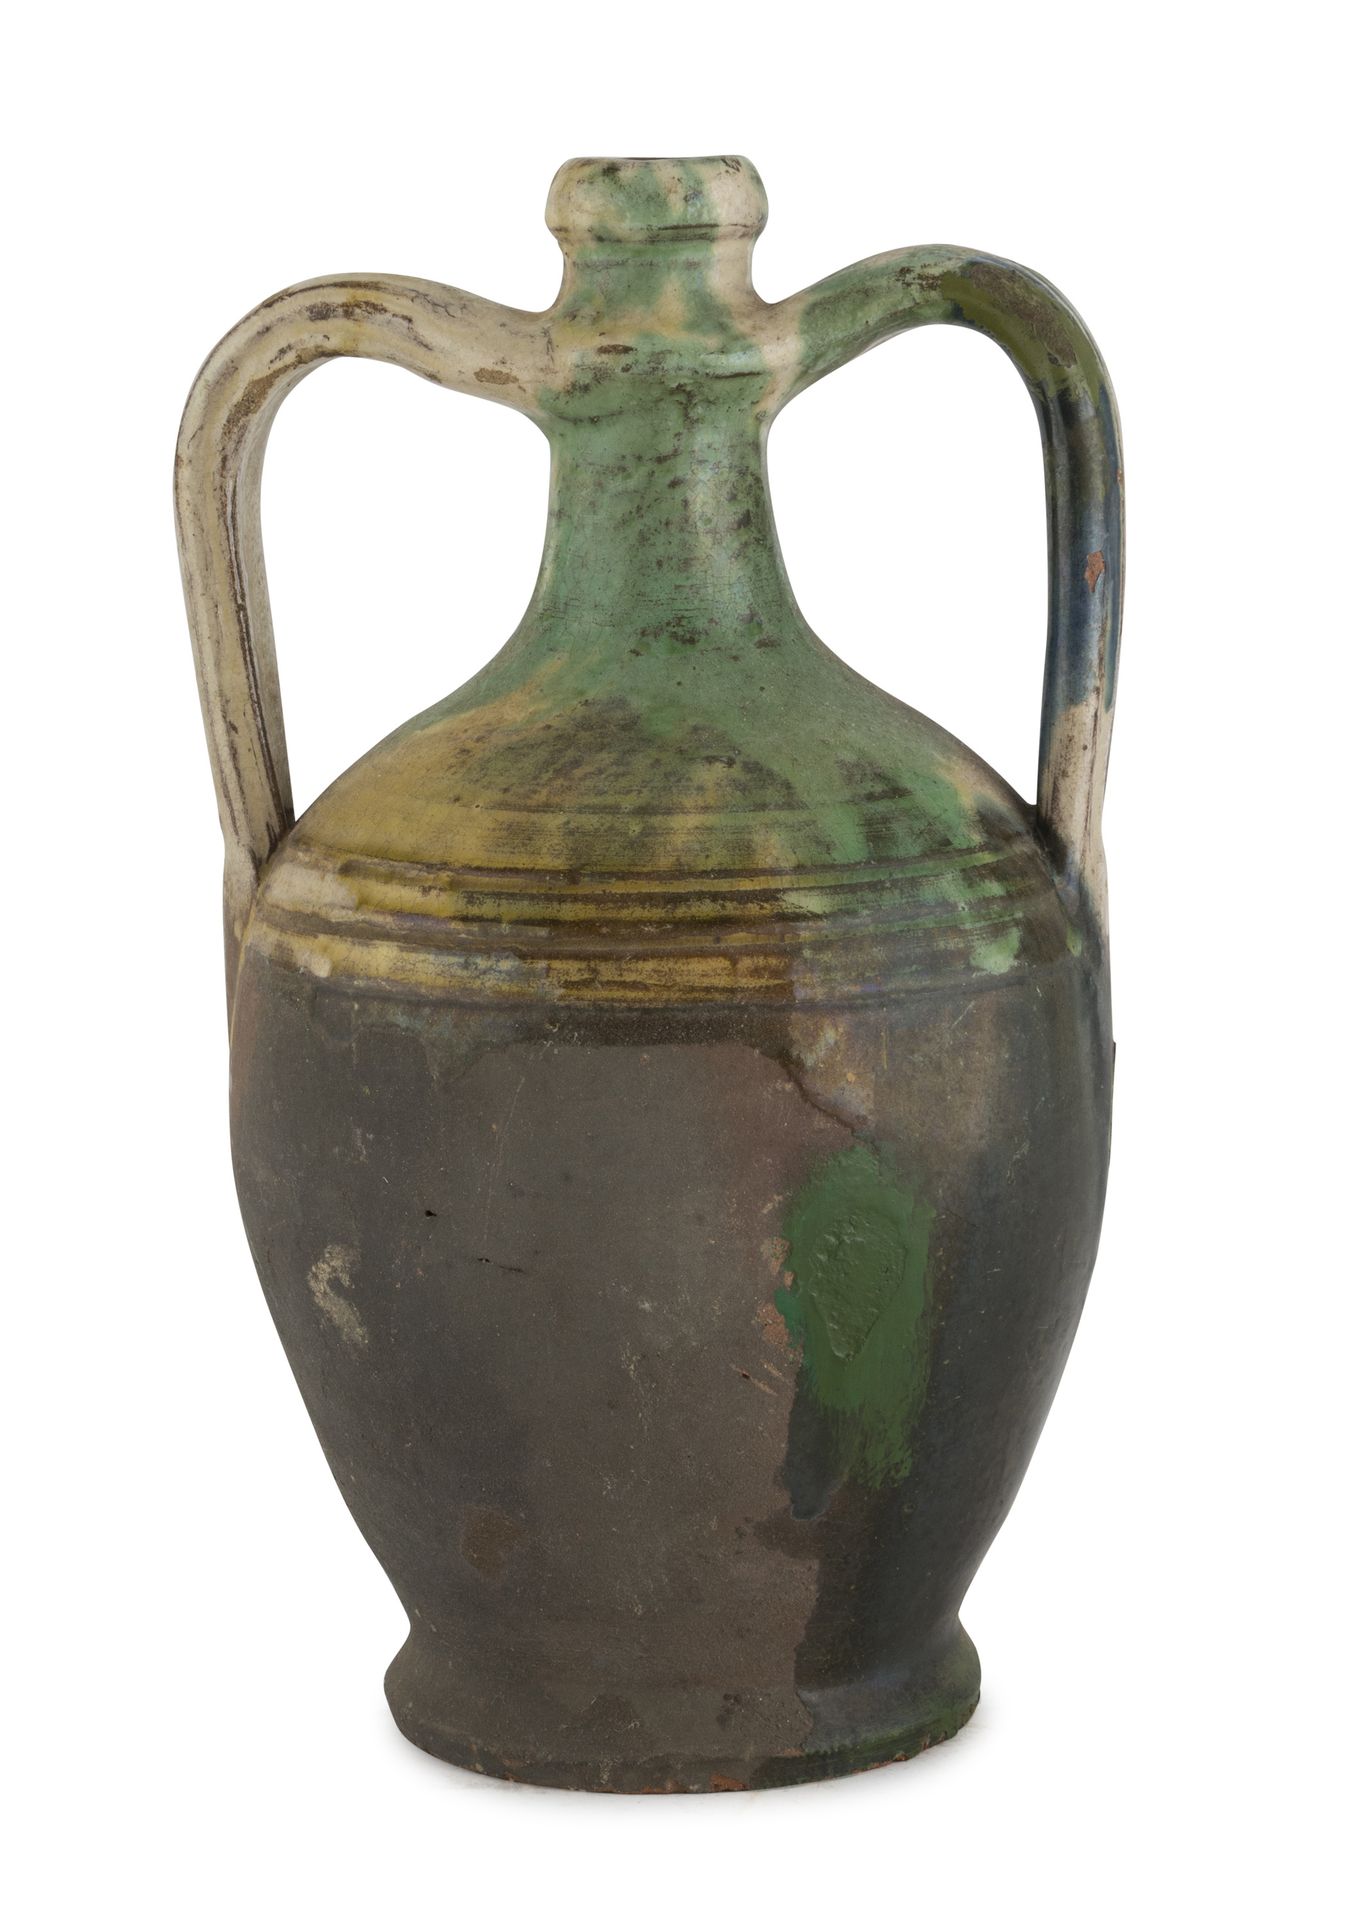 Null 陶罐，Seminara 19世纪末

部分绿色和黄色的釉面。丝带手柄。

尺寸 cm. 29 x 17 x 15.

颜色下降。